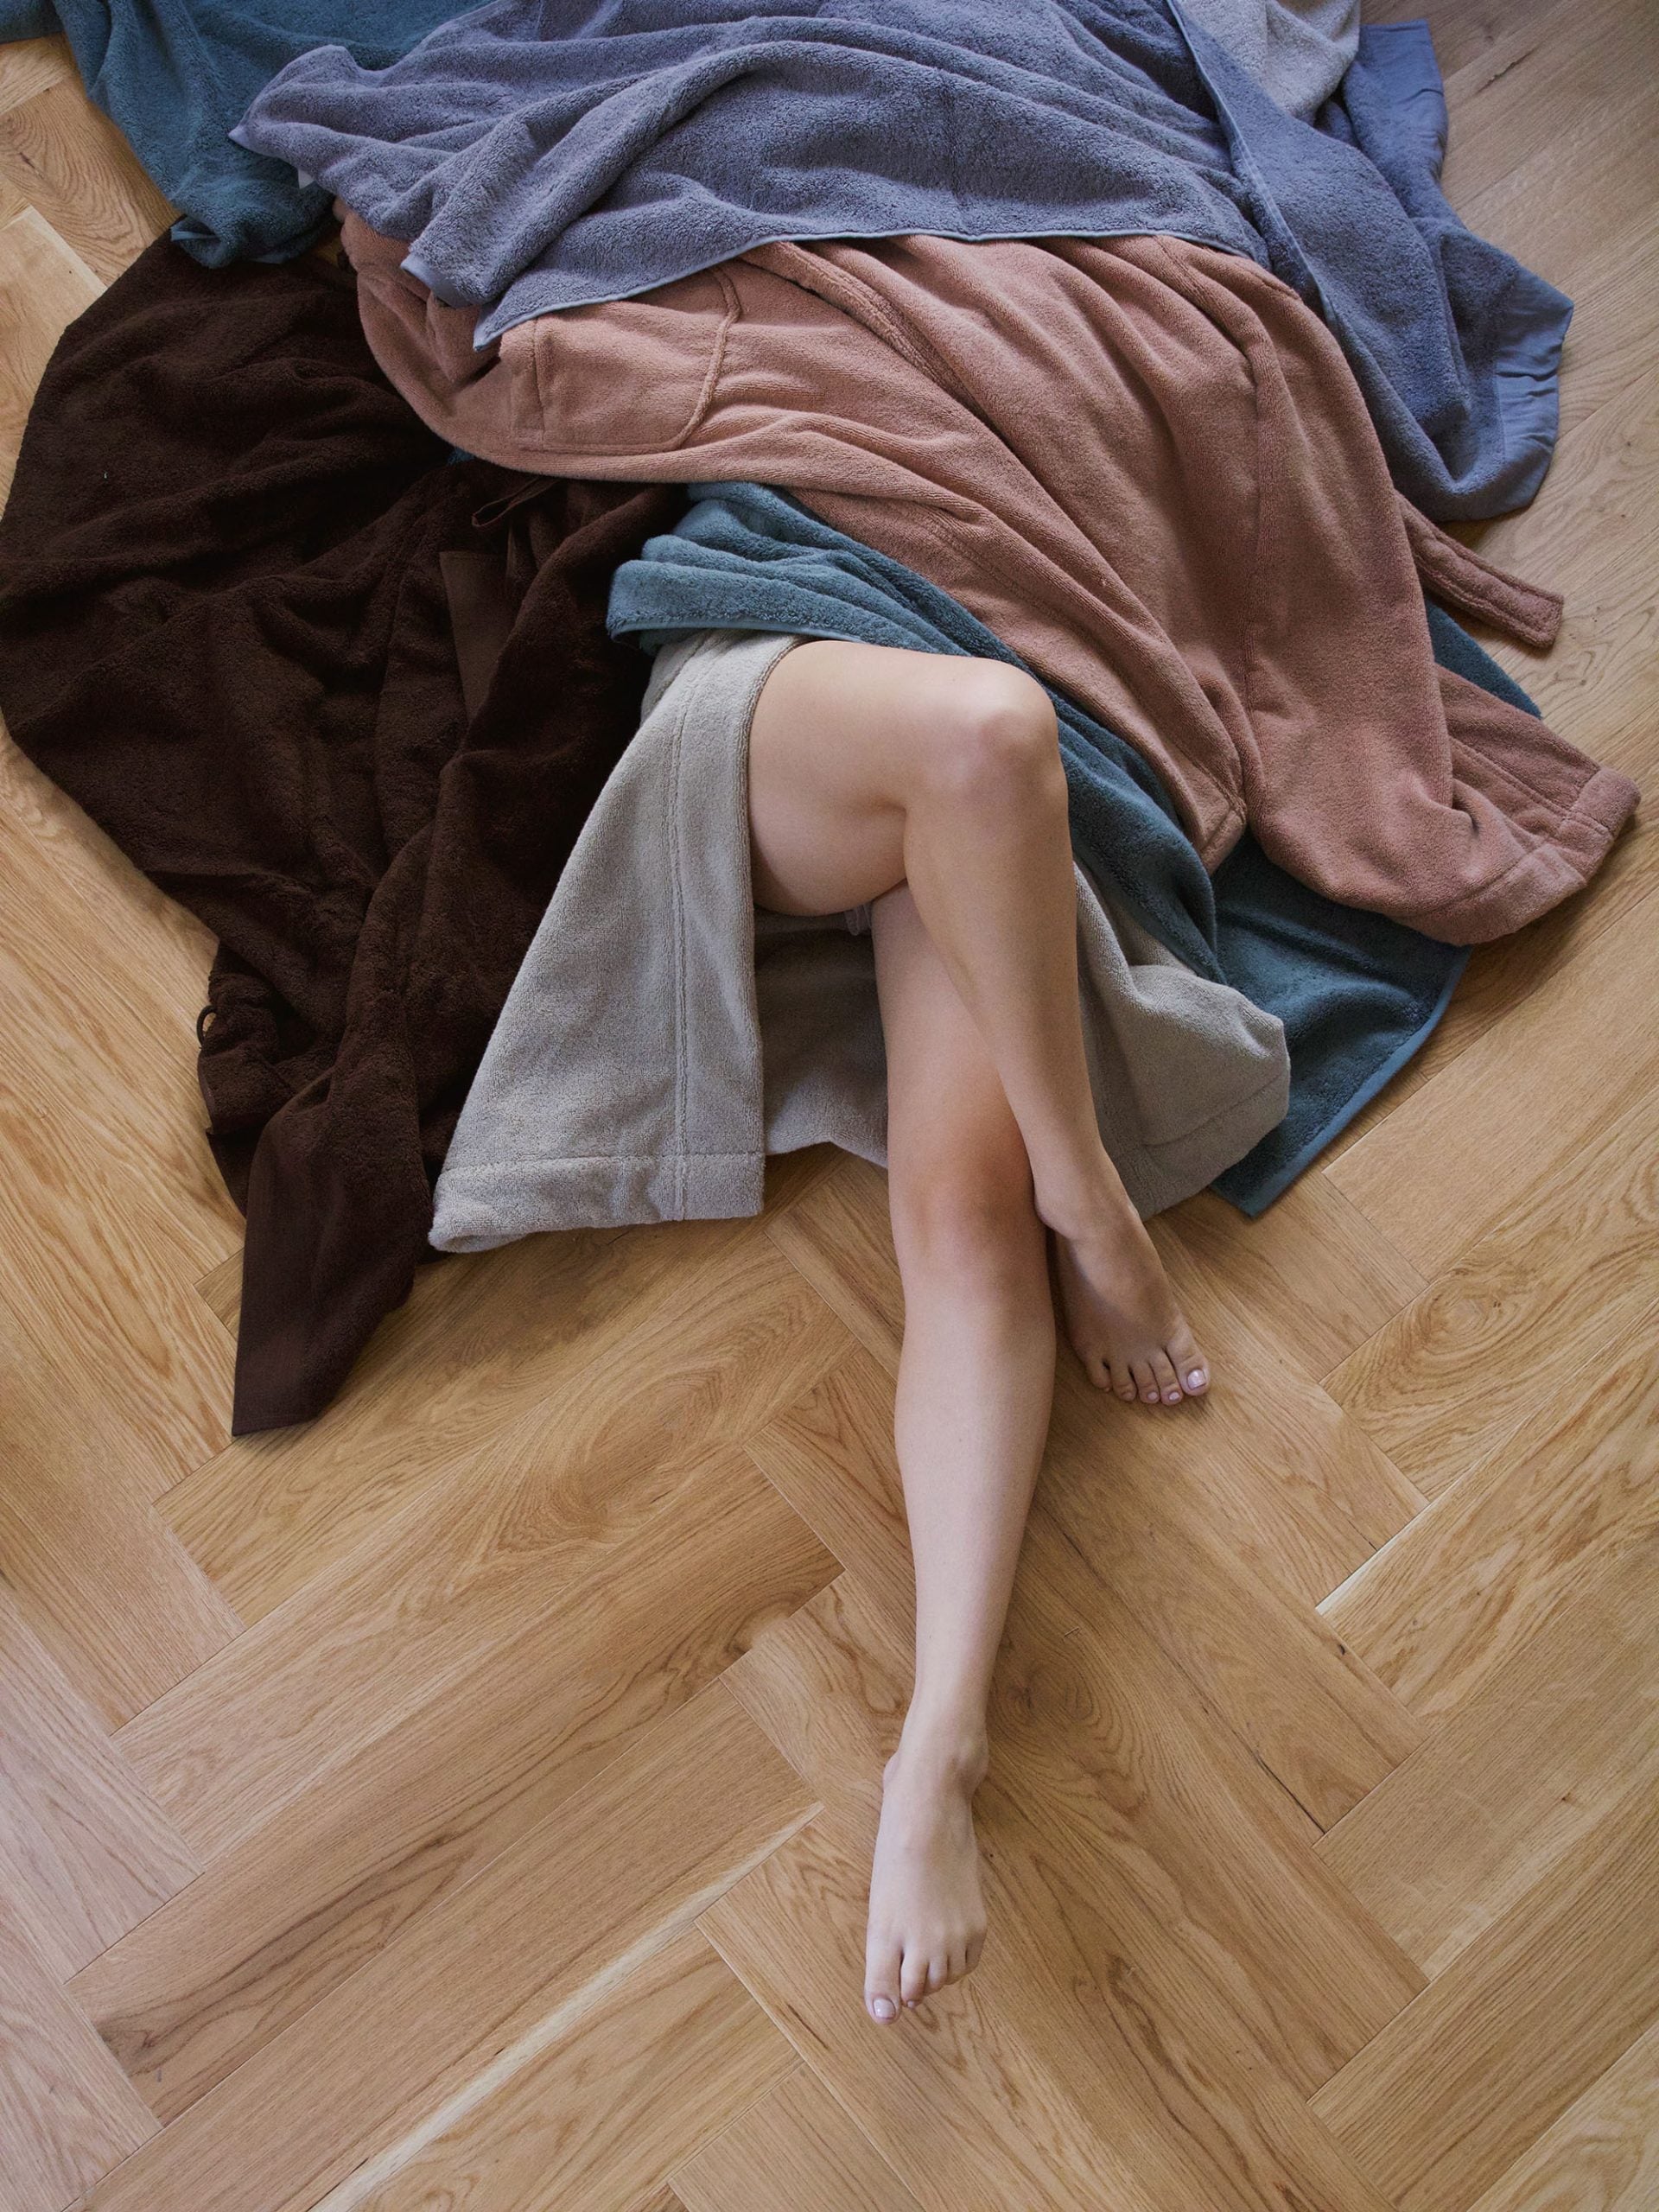 אישה  על רצפת פרקט באור יום מסתתרת מתחת למגוון חלוקי רחצה בגוונים שונים